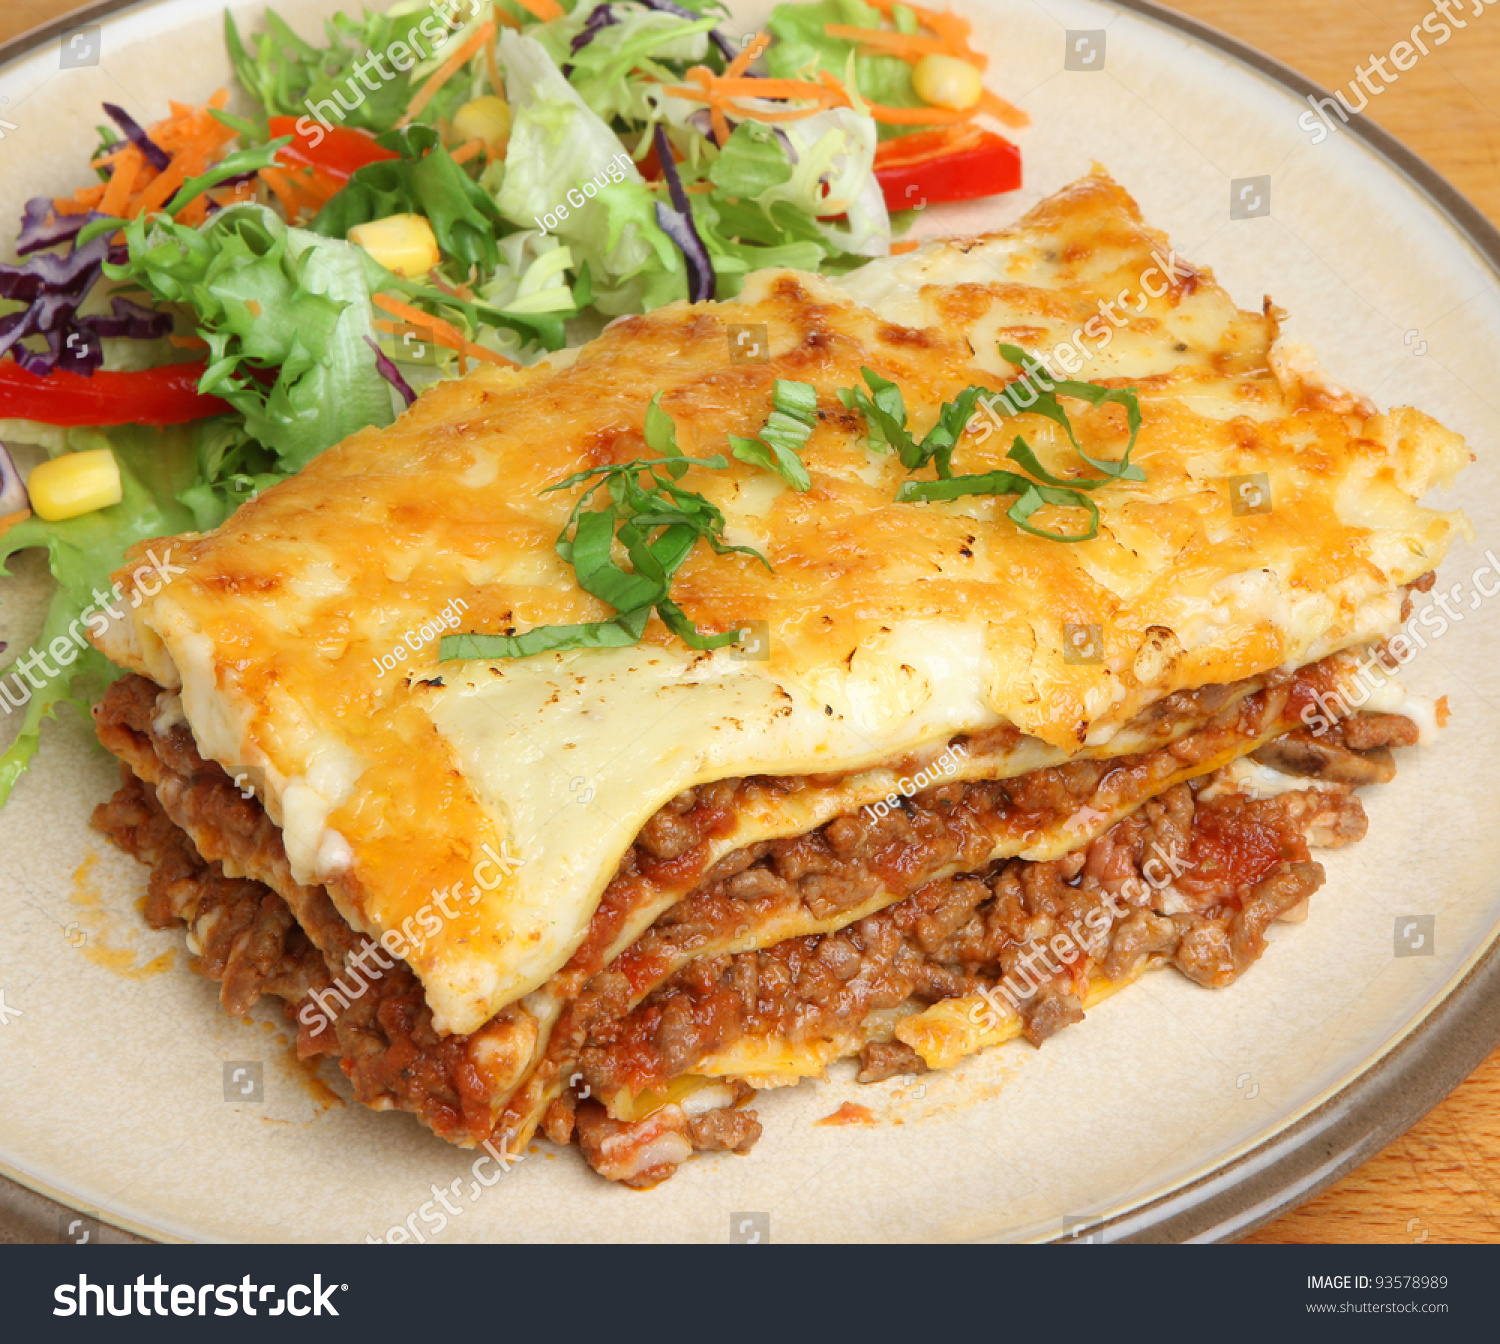 Beef Lasagna Salad Stock Photo 93578989 - Shutterstock